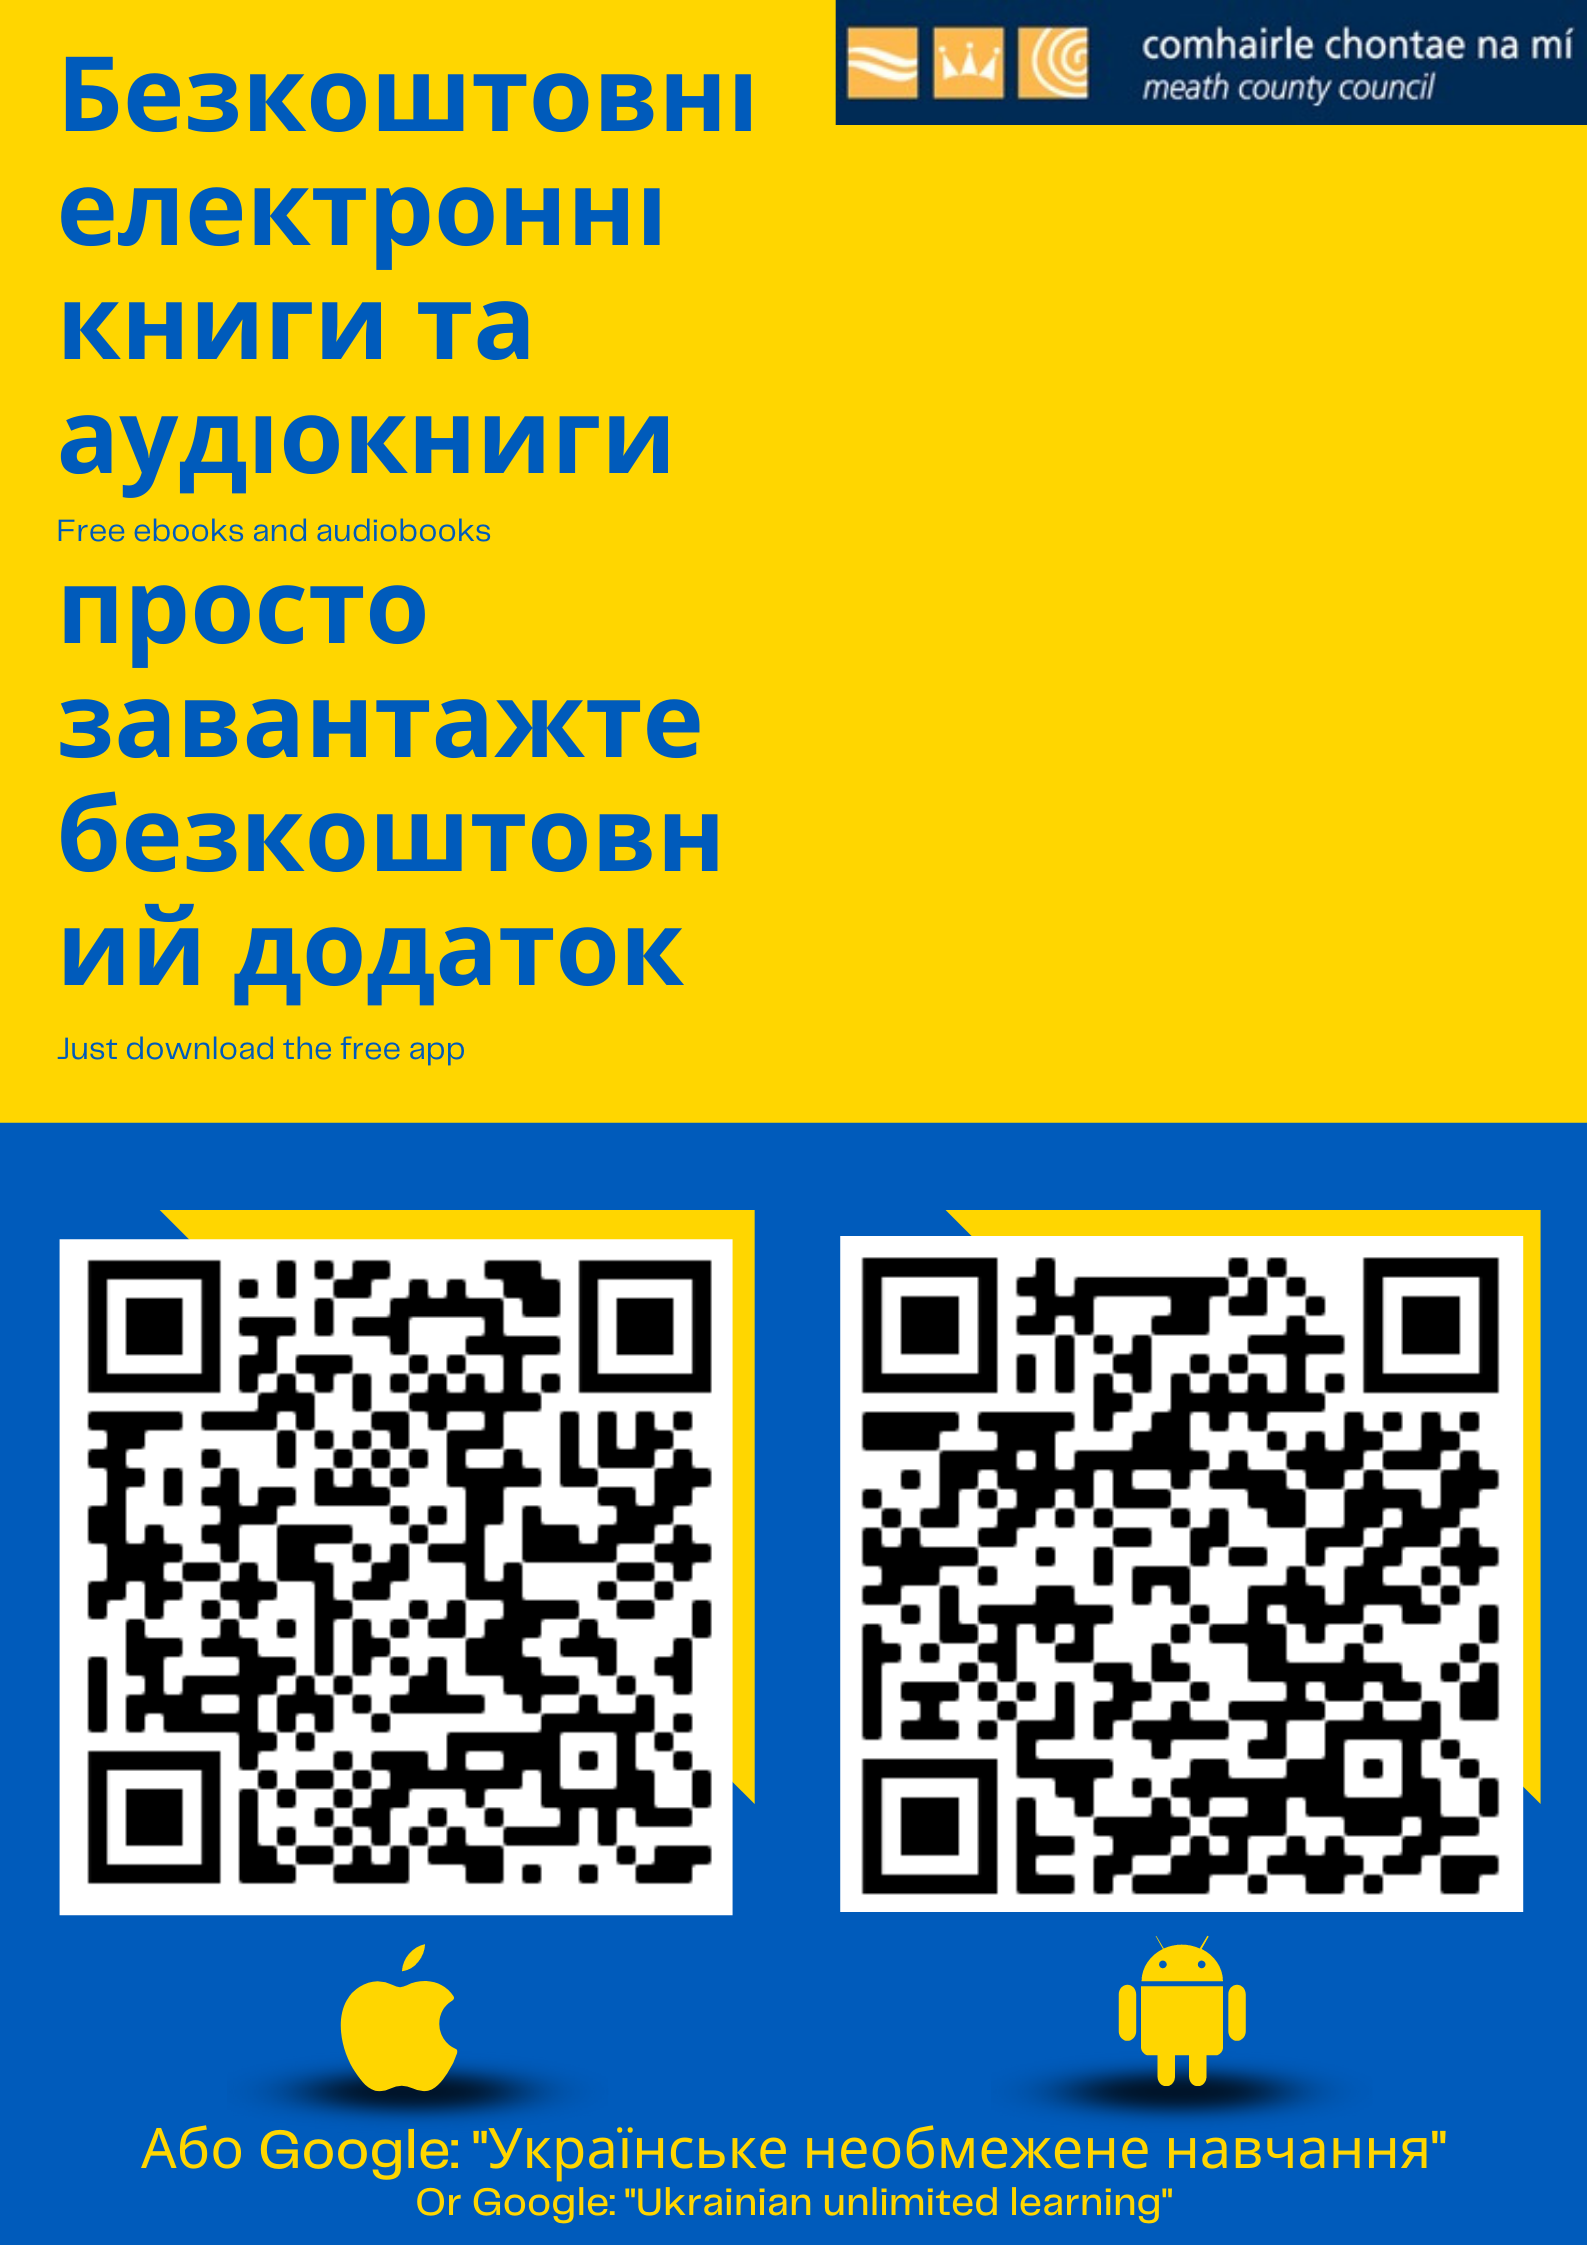 Ukranian Unlimited Learning App